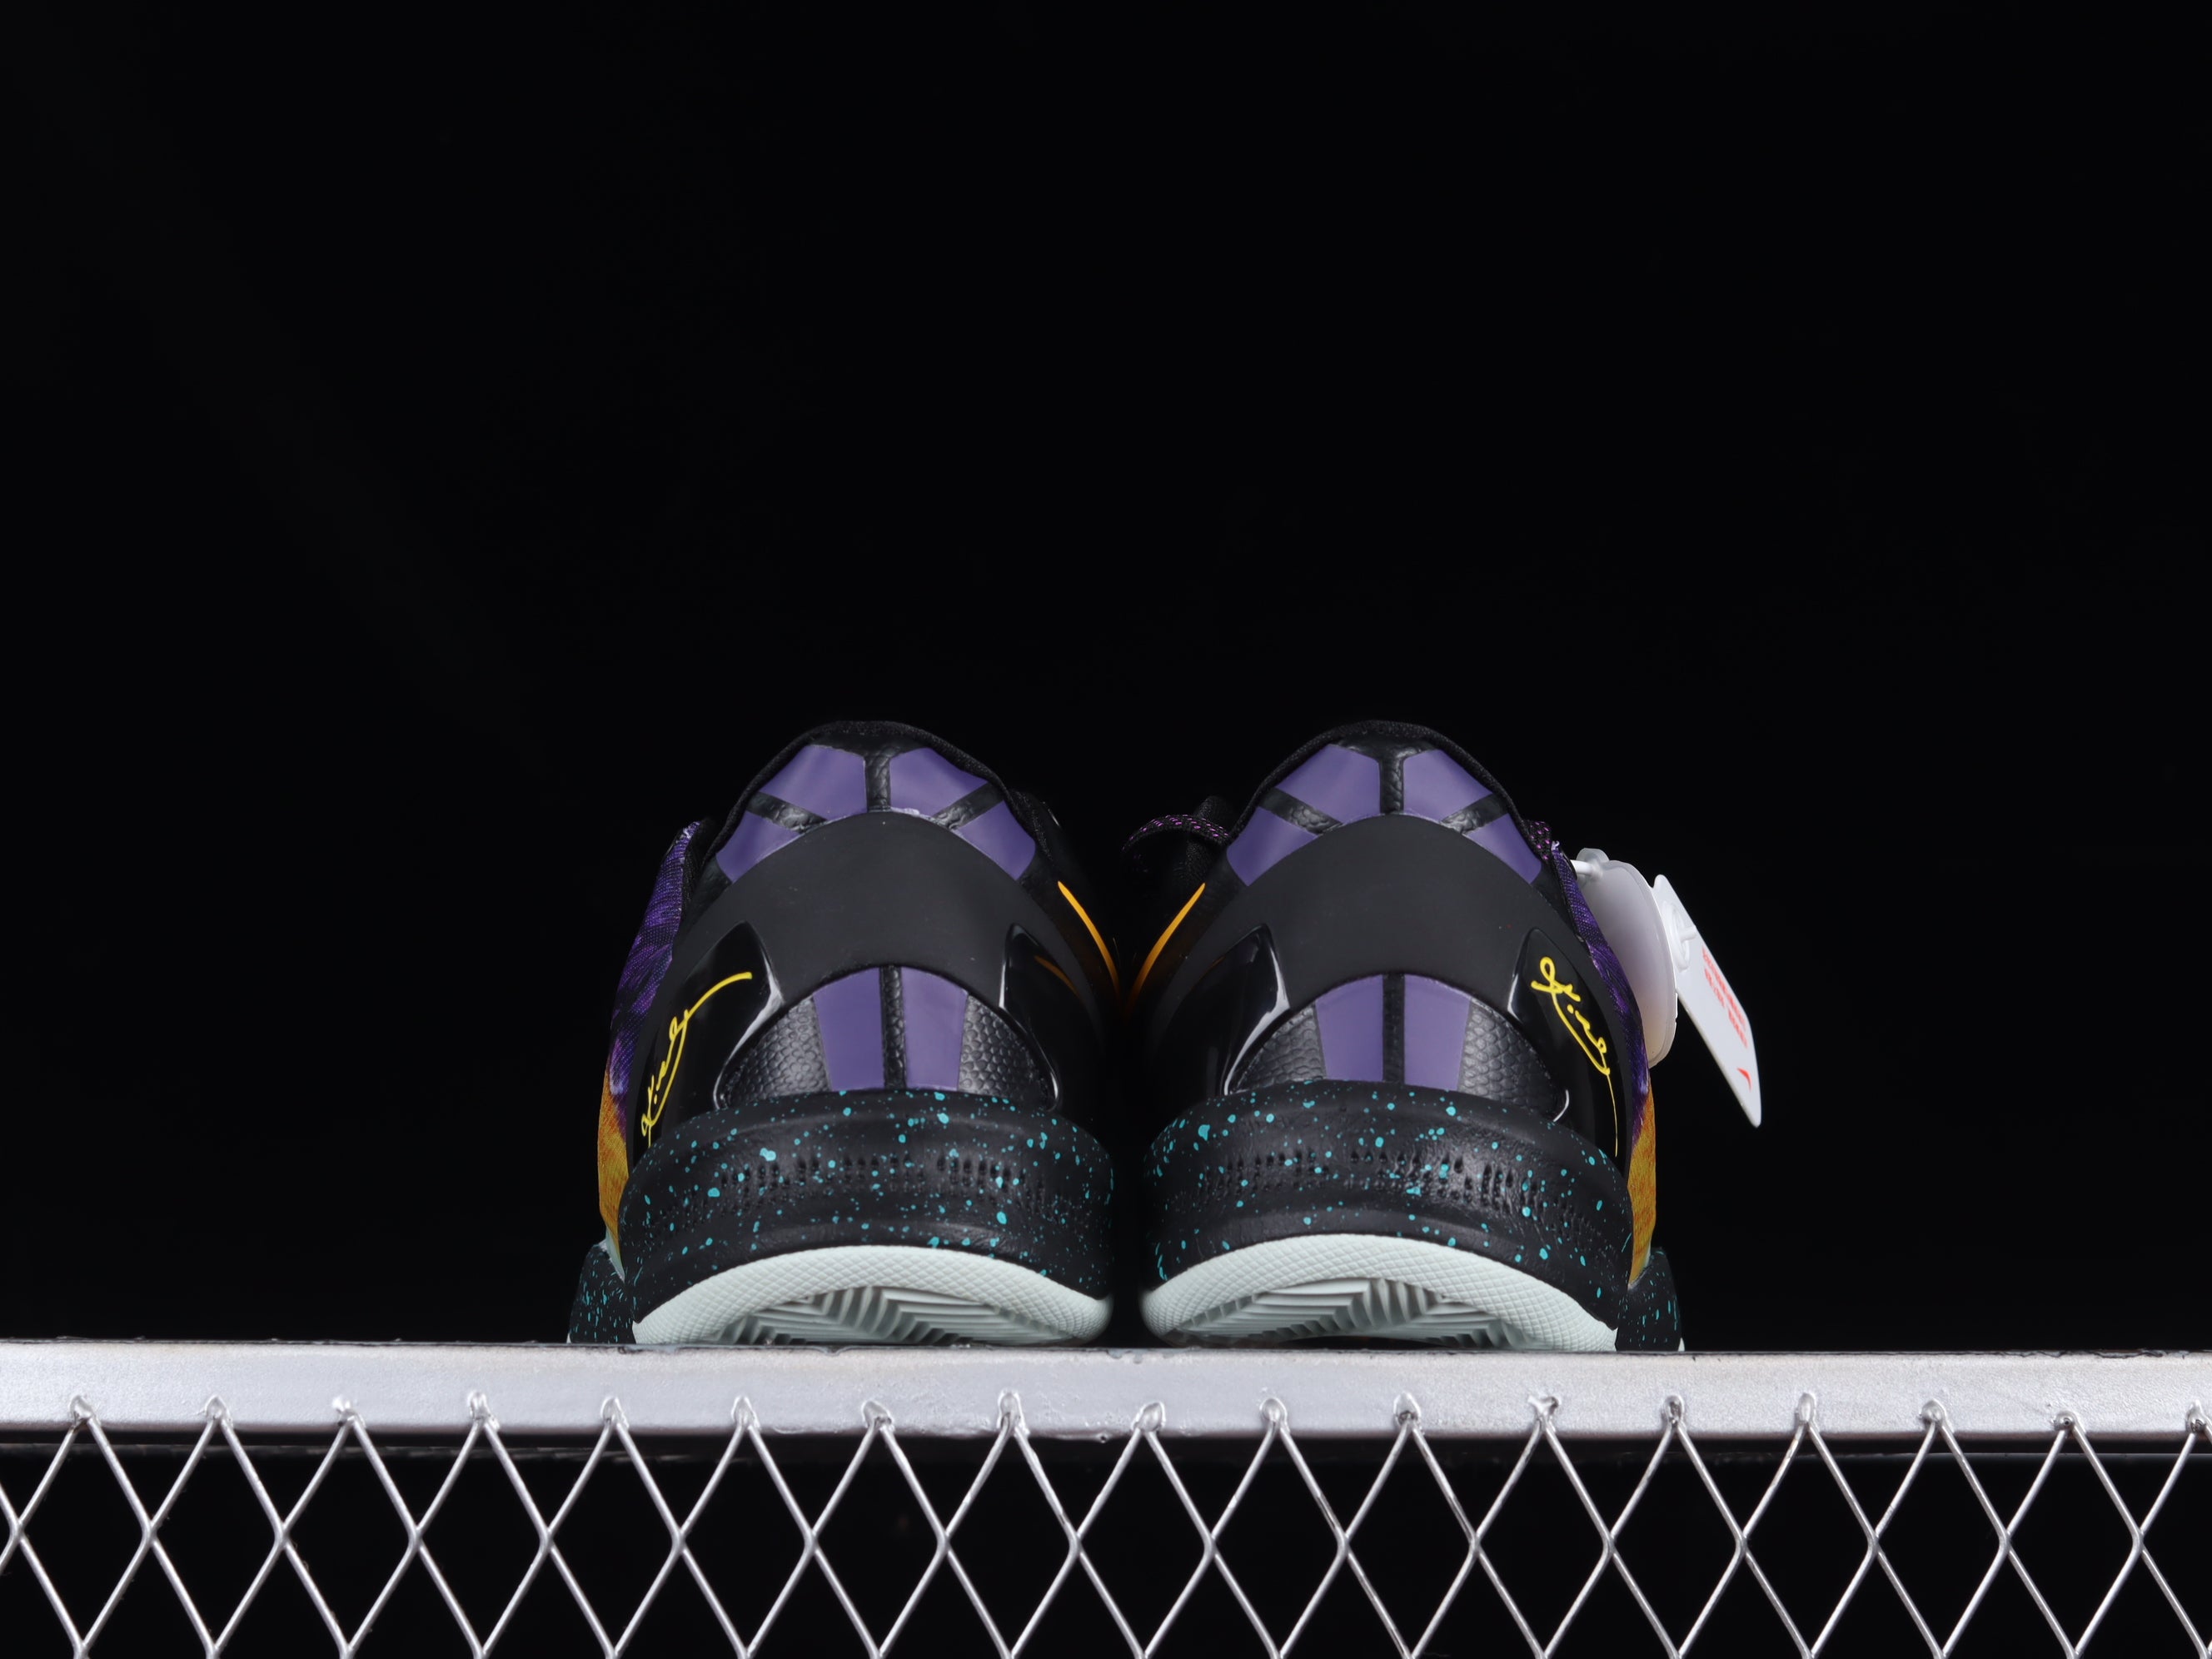 NikeMens Kobe 8 - Easter